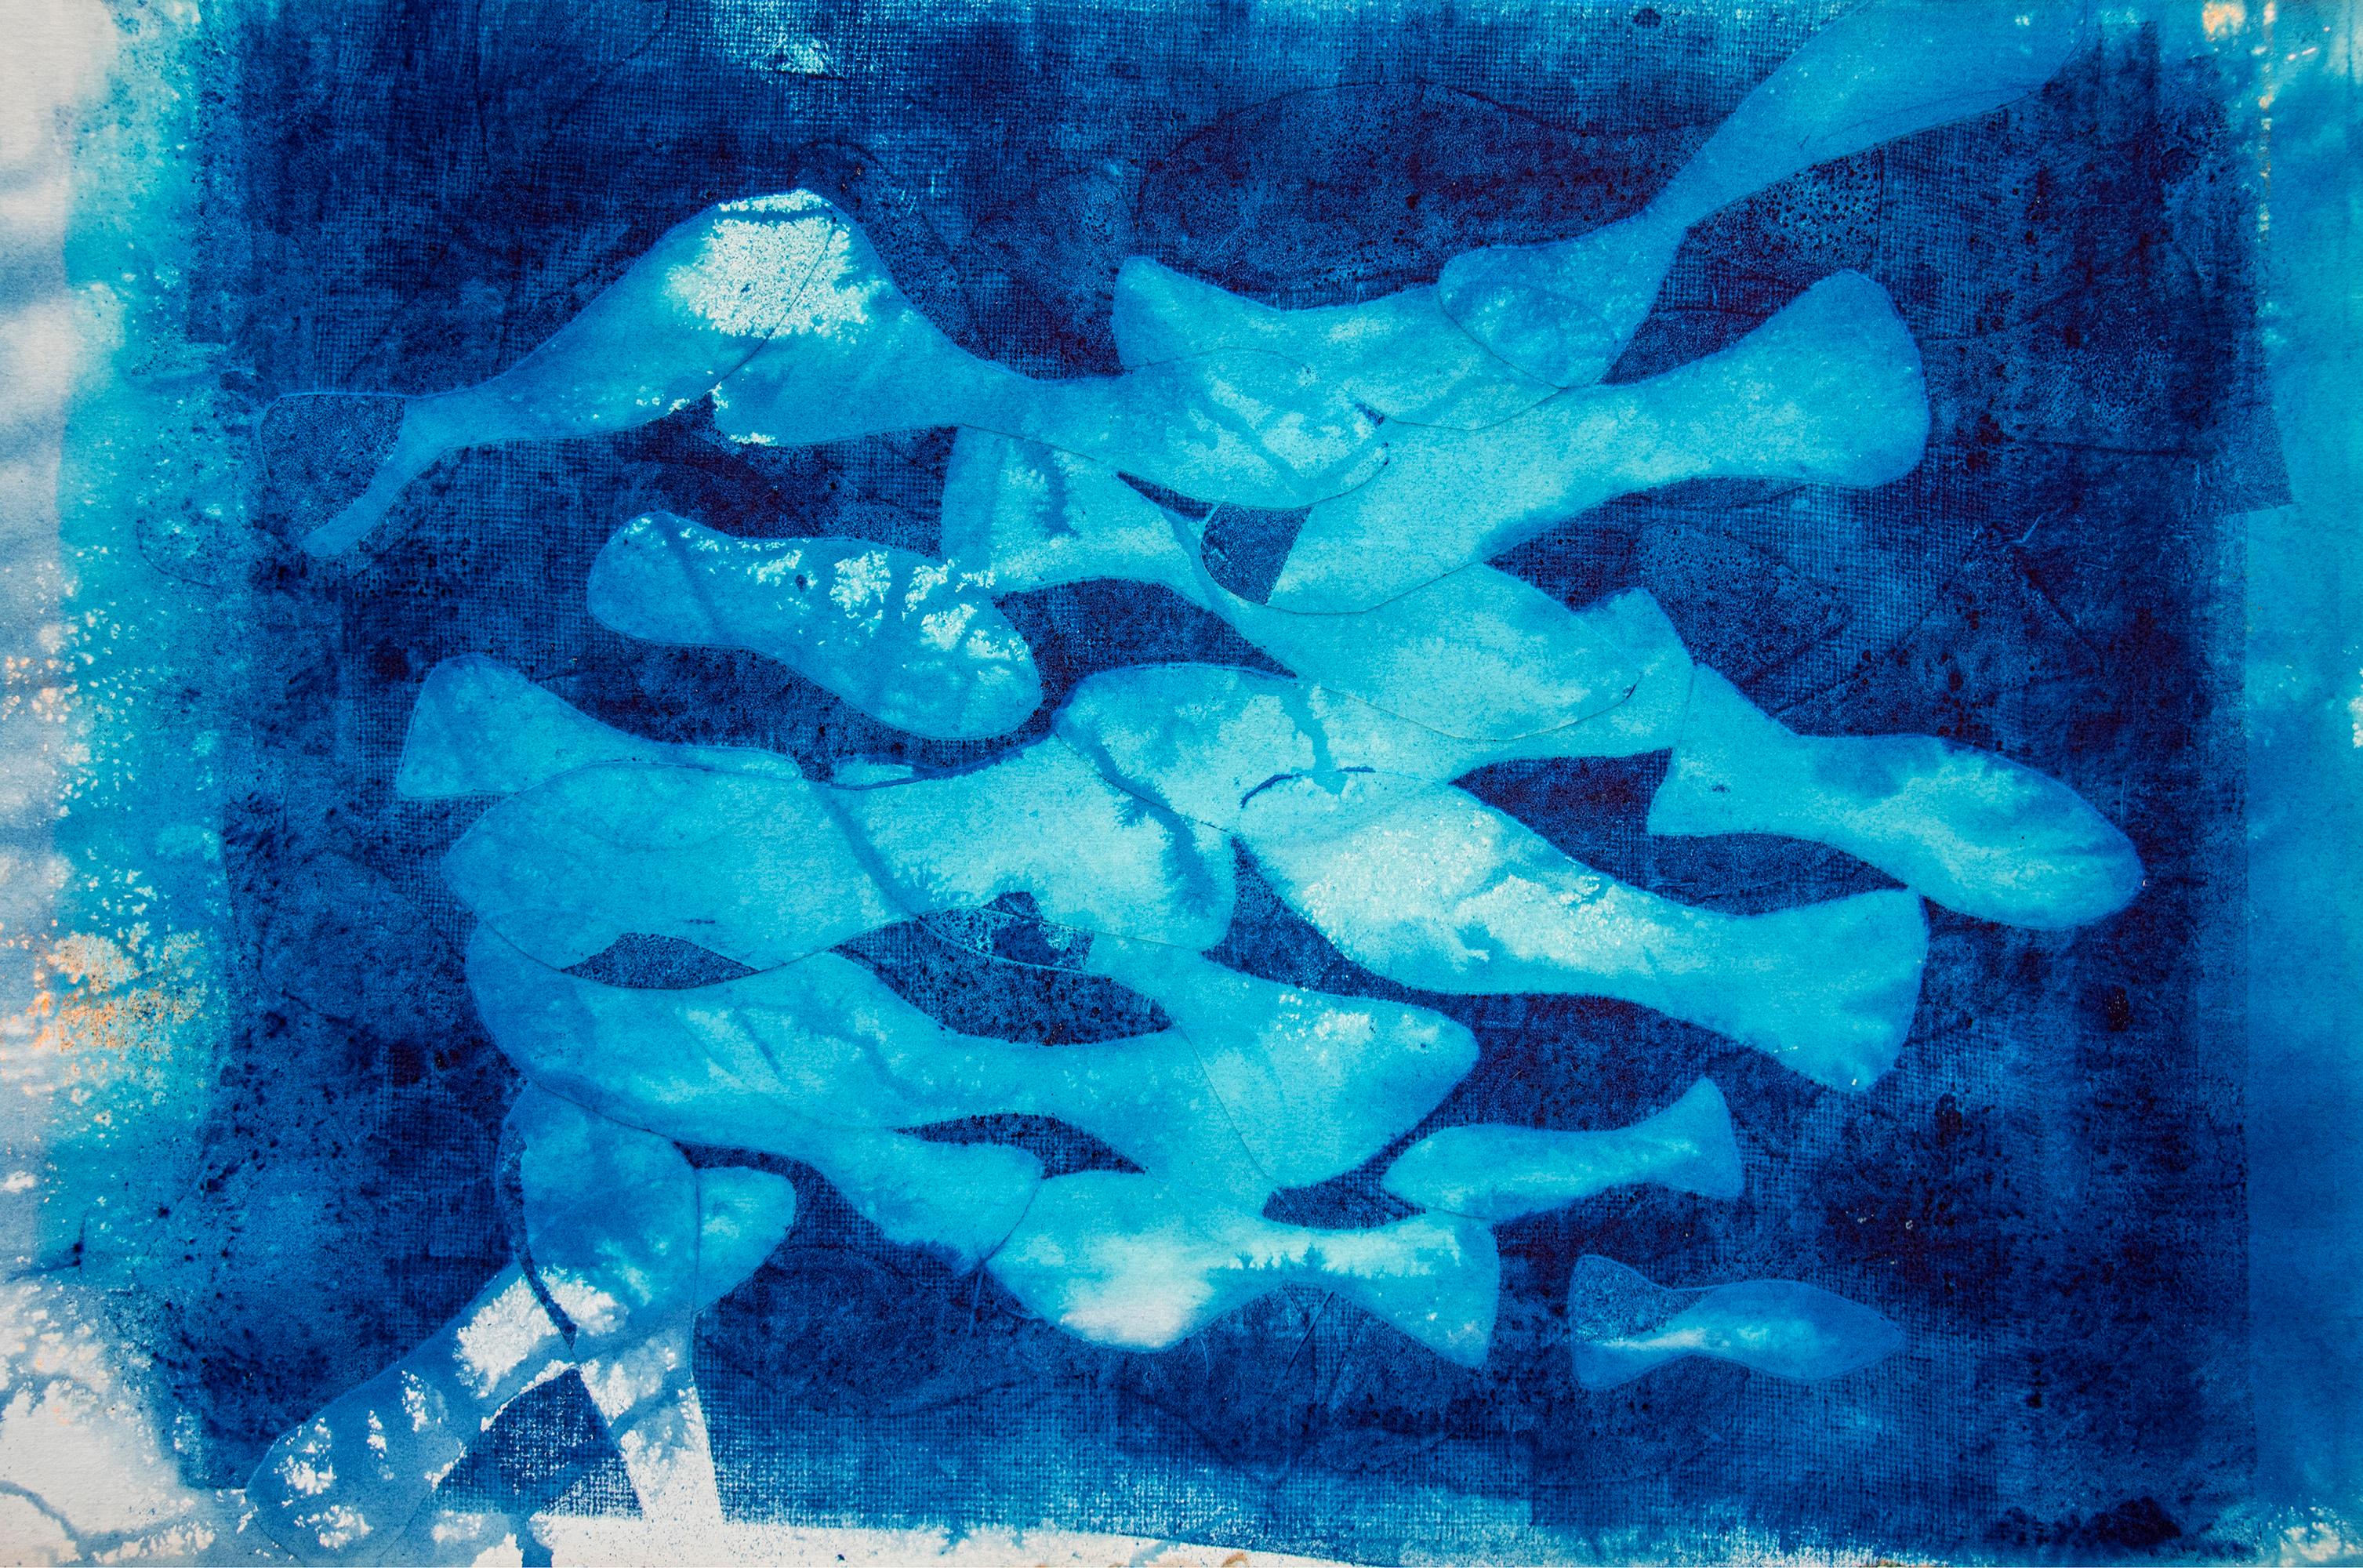 Marina Abismal, Pintura Técnica Mixta, Tonos Azules, Patrones de Peces Mediterráneos